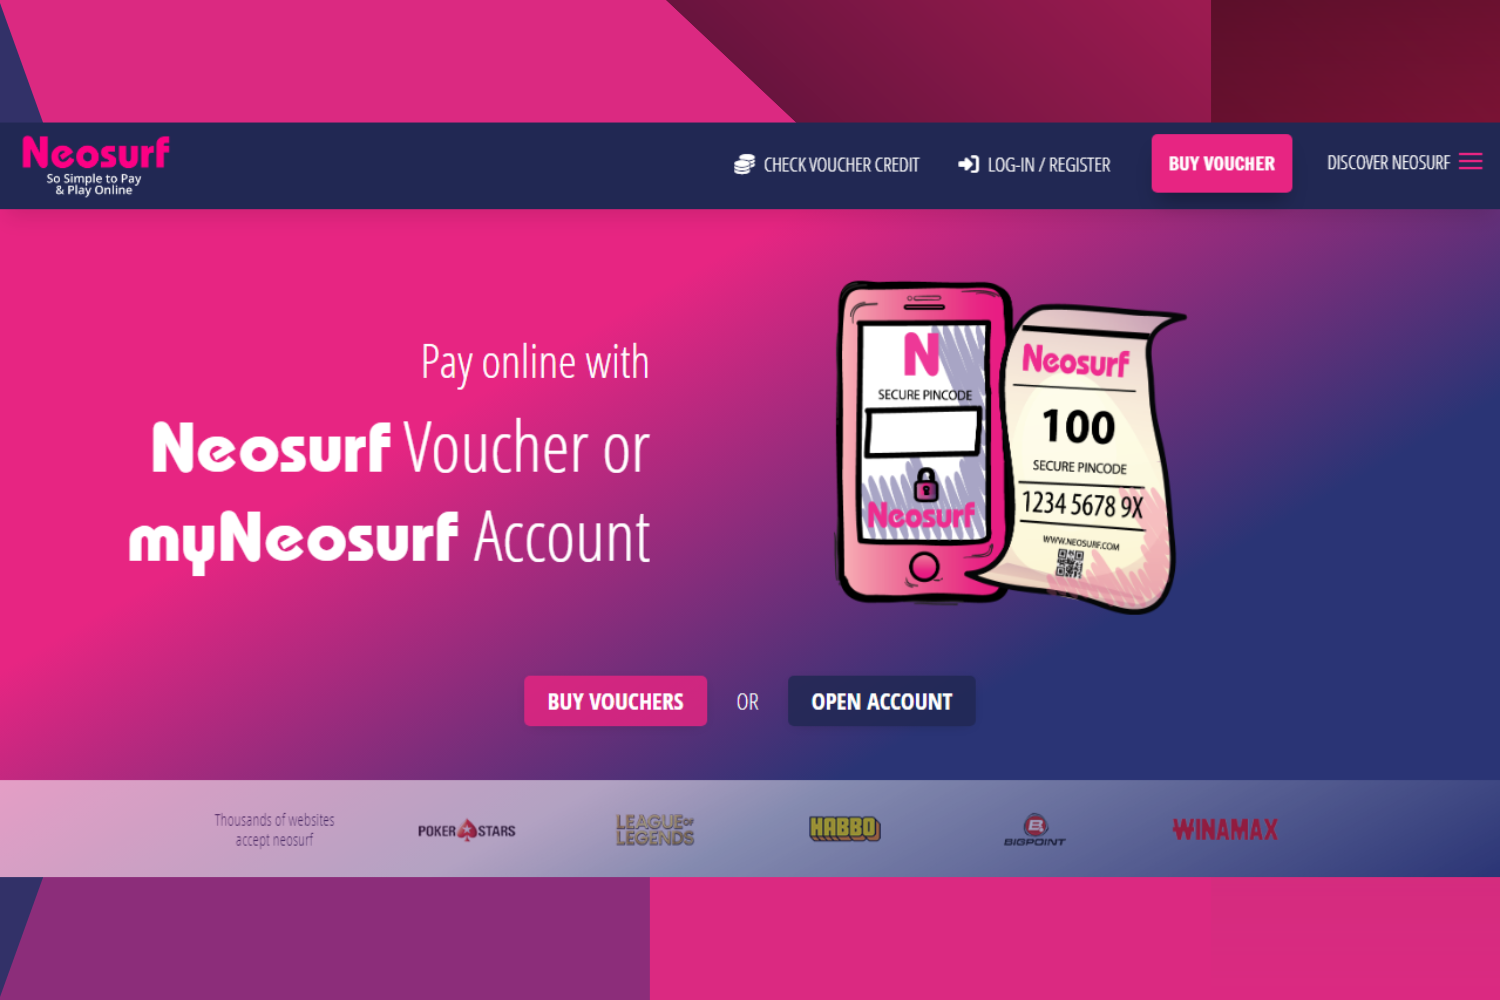 Neosurf account and Neosurf Voucher